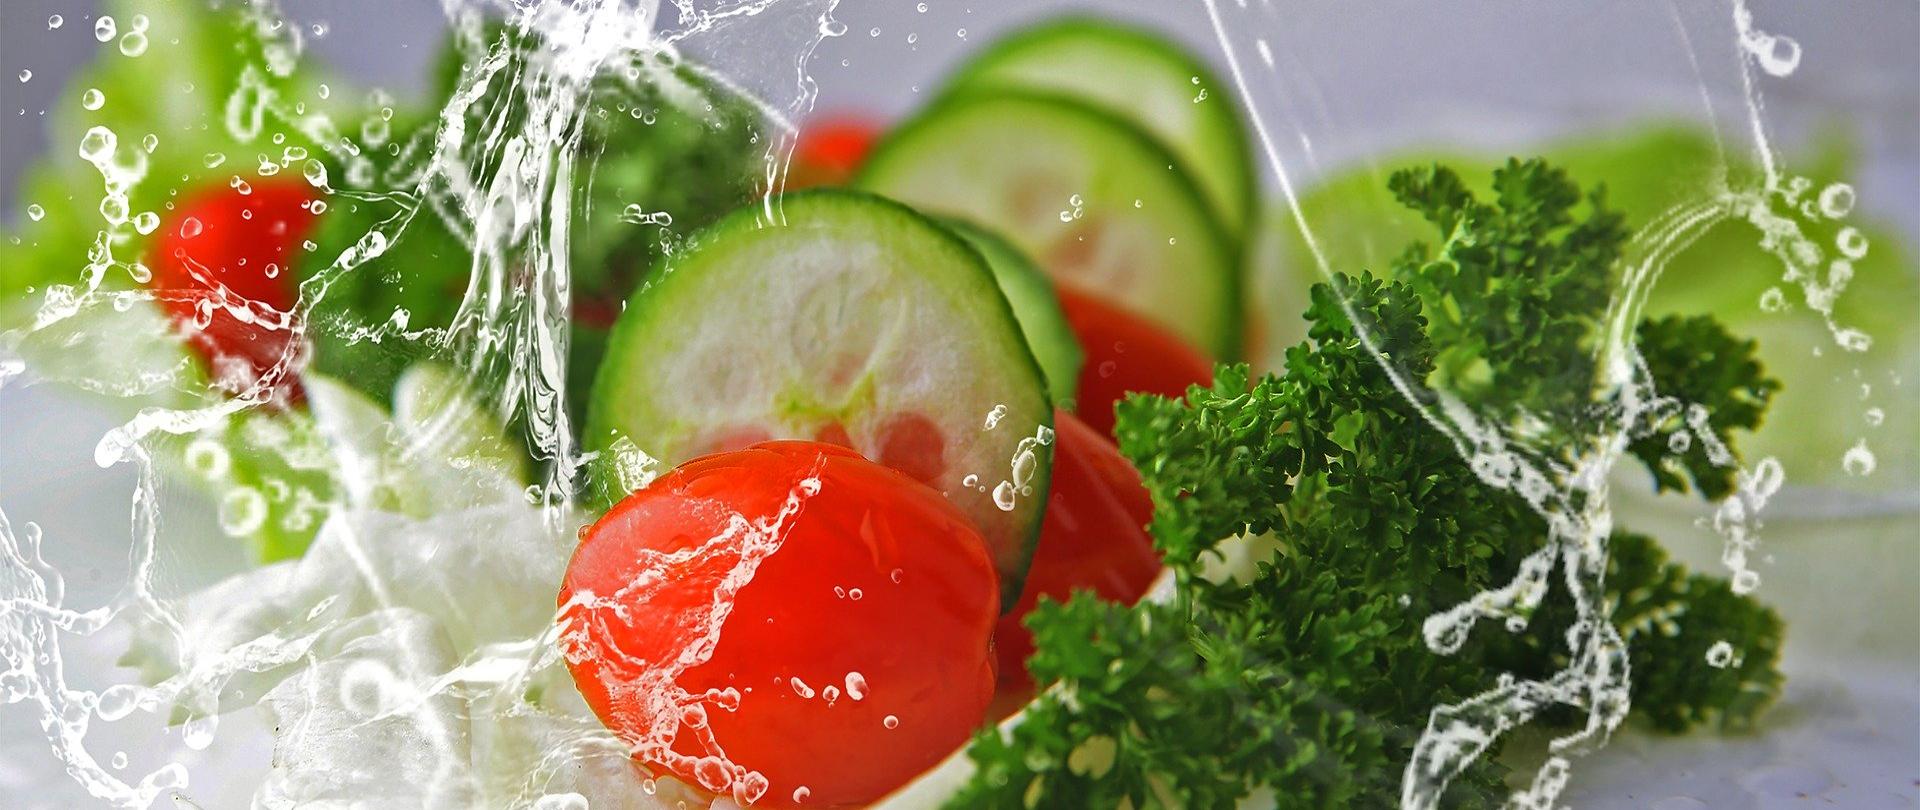 Na zdjęciu znajdują się warzywa tj. ogórek, pomidor i natka pietruszka oblane strumieniem wody. Tło jest szare.